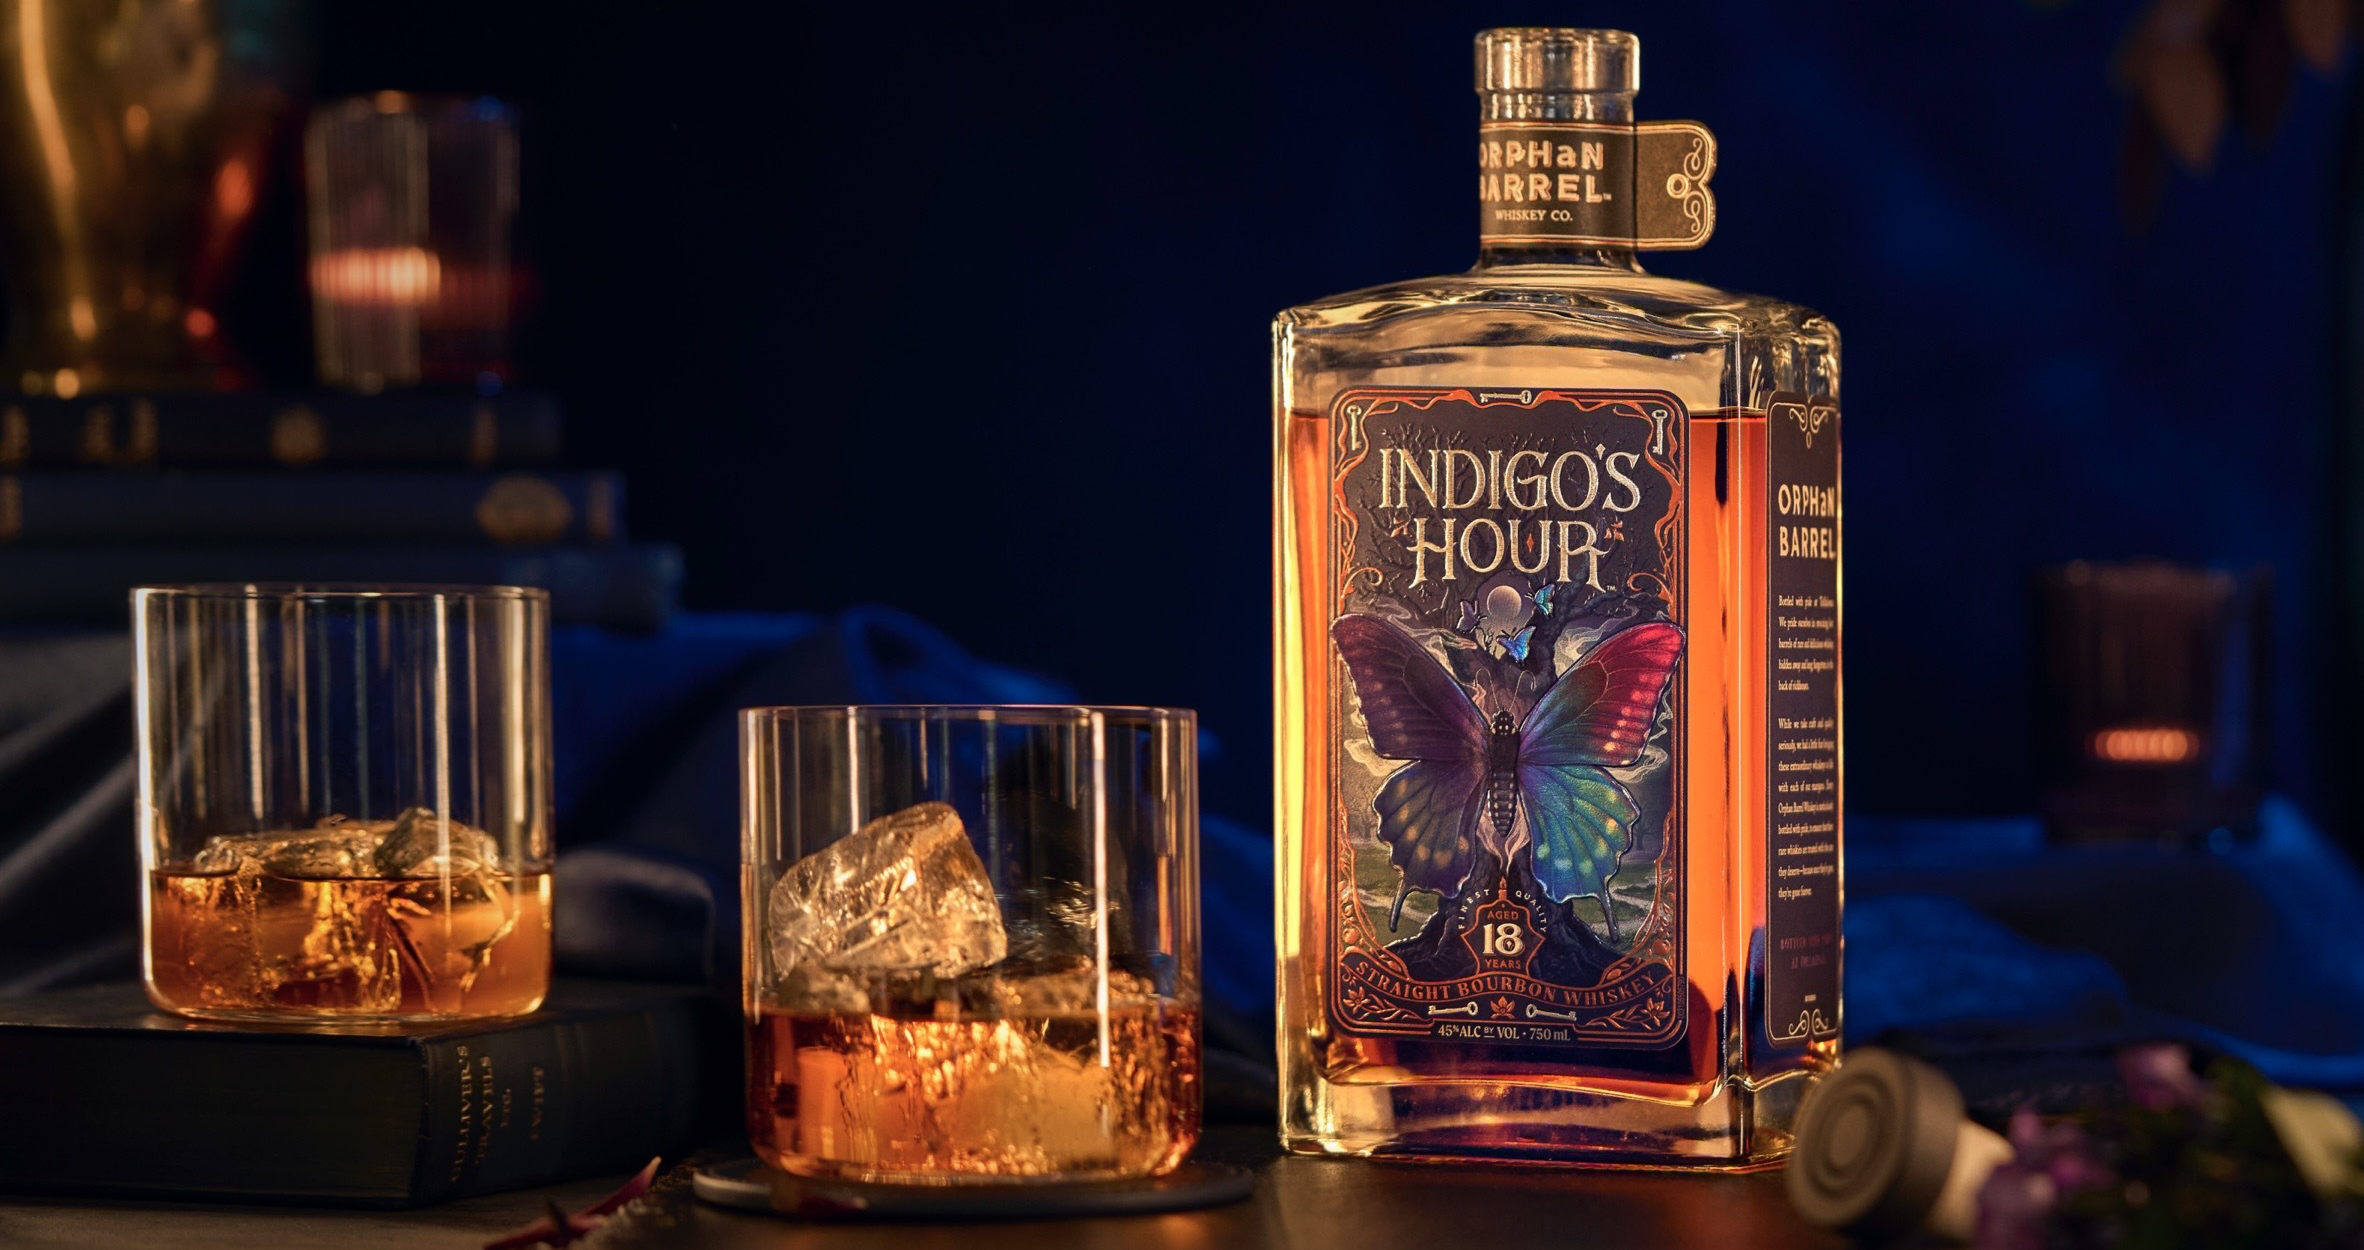 Indigo's Hour bottle